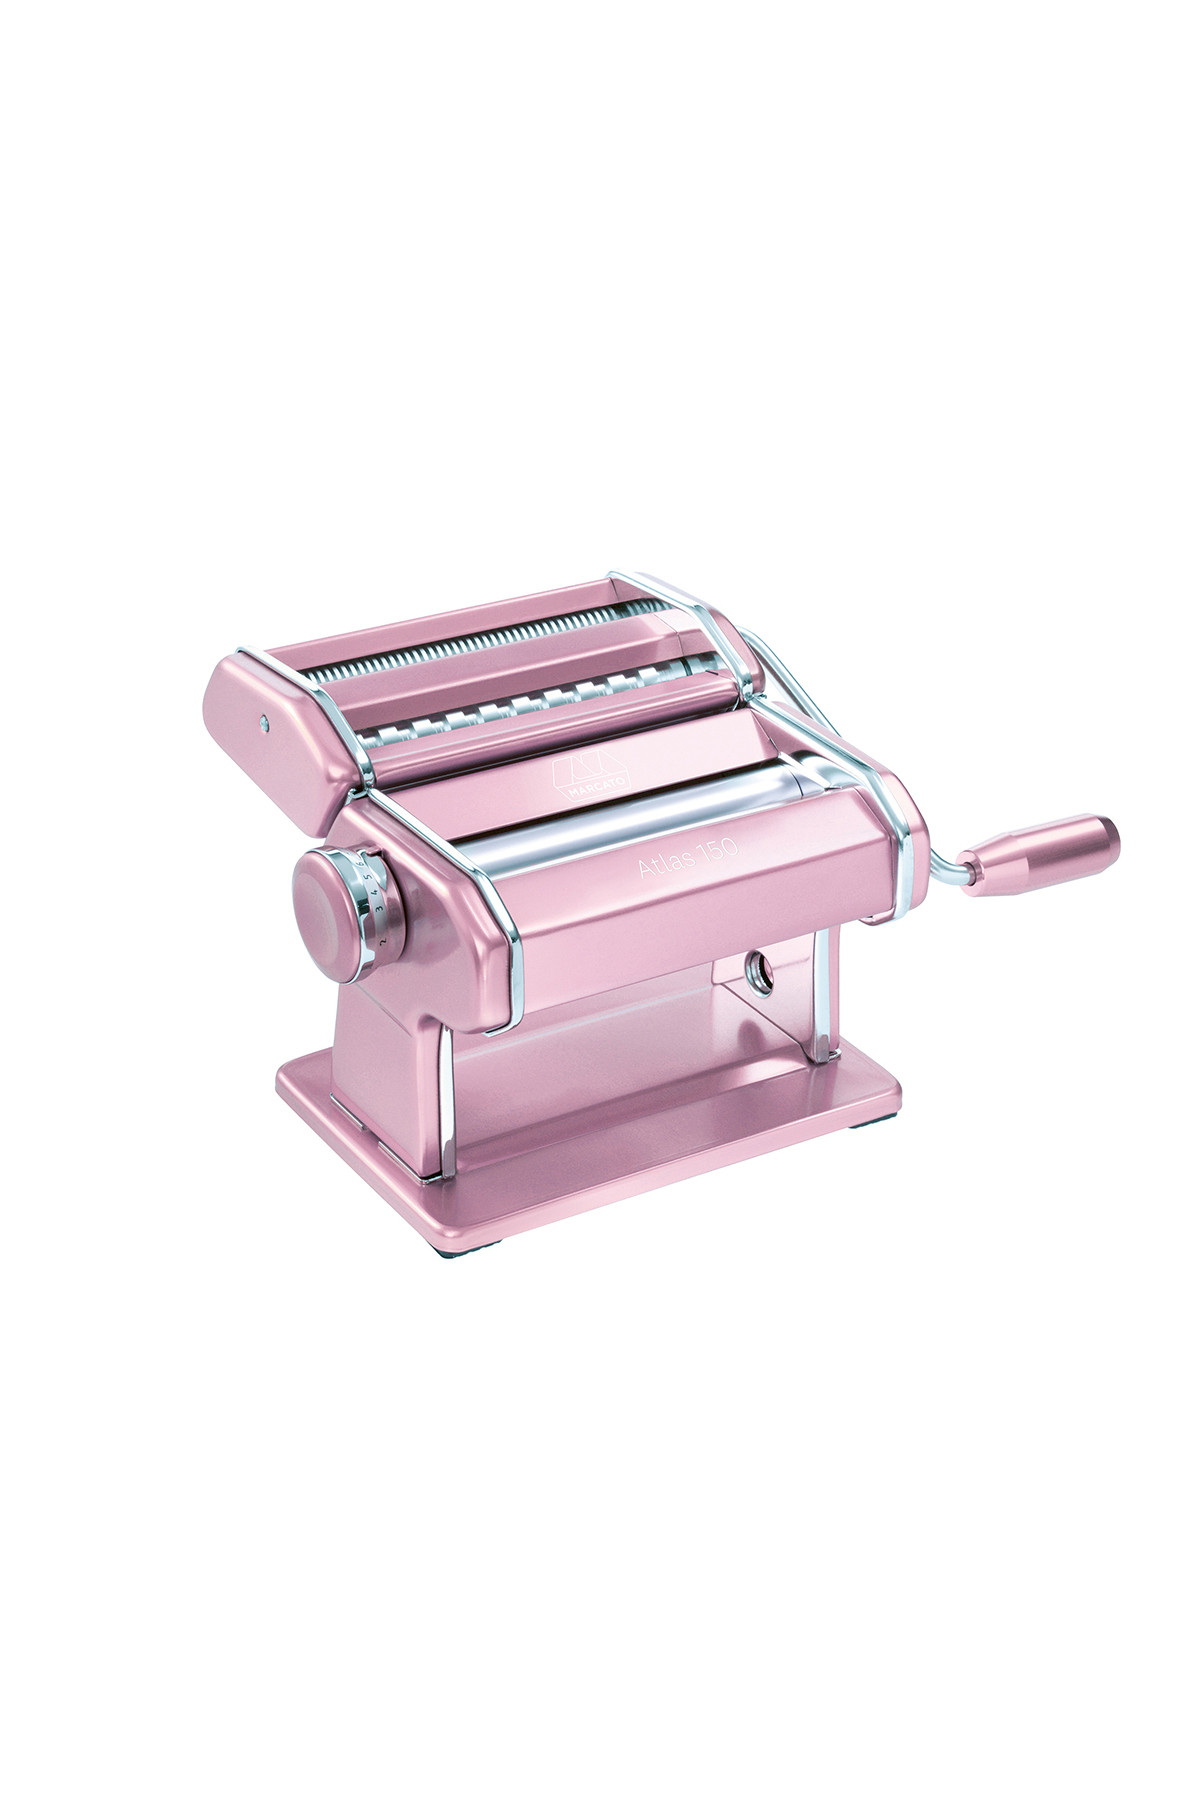 https://media.heirol.fi/46-1000+VP/1200/pasta-maker-marcato-atlas-150-mm-pink_.jpg